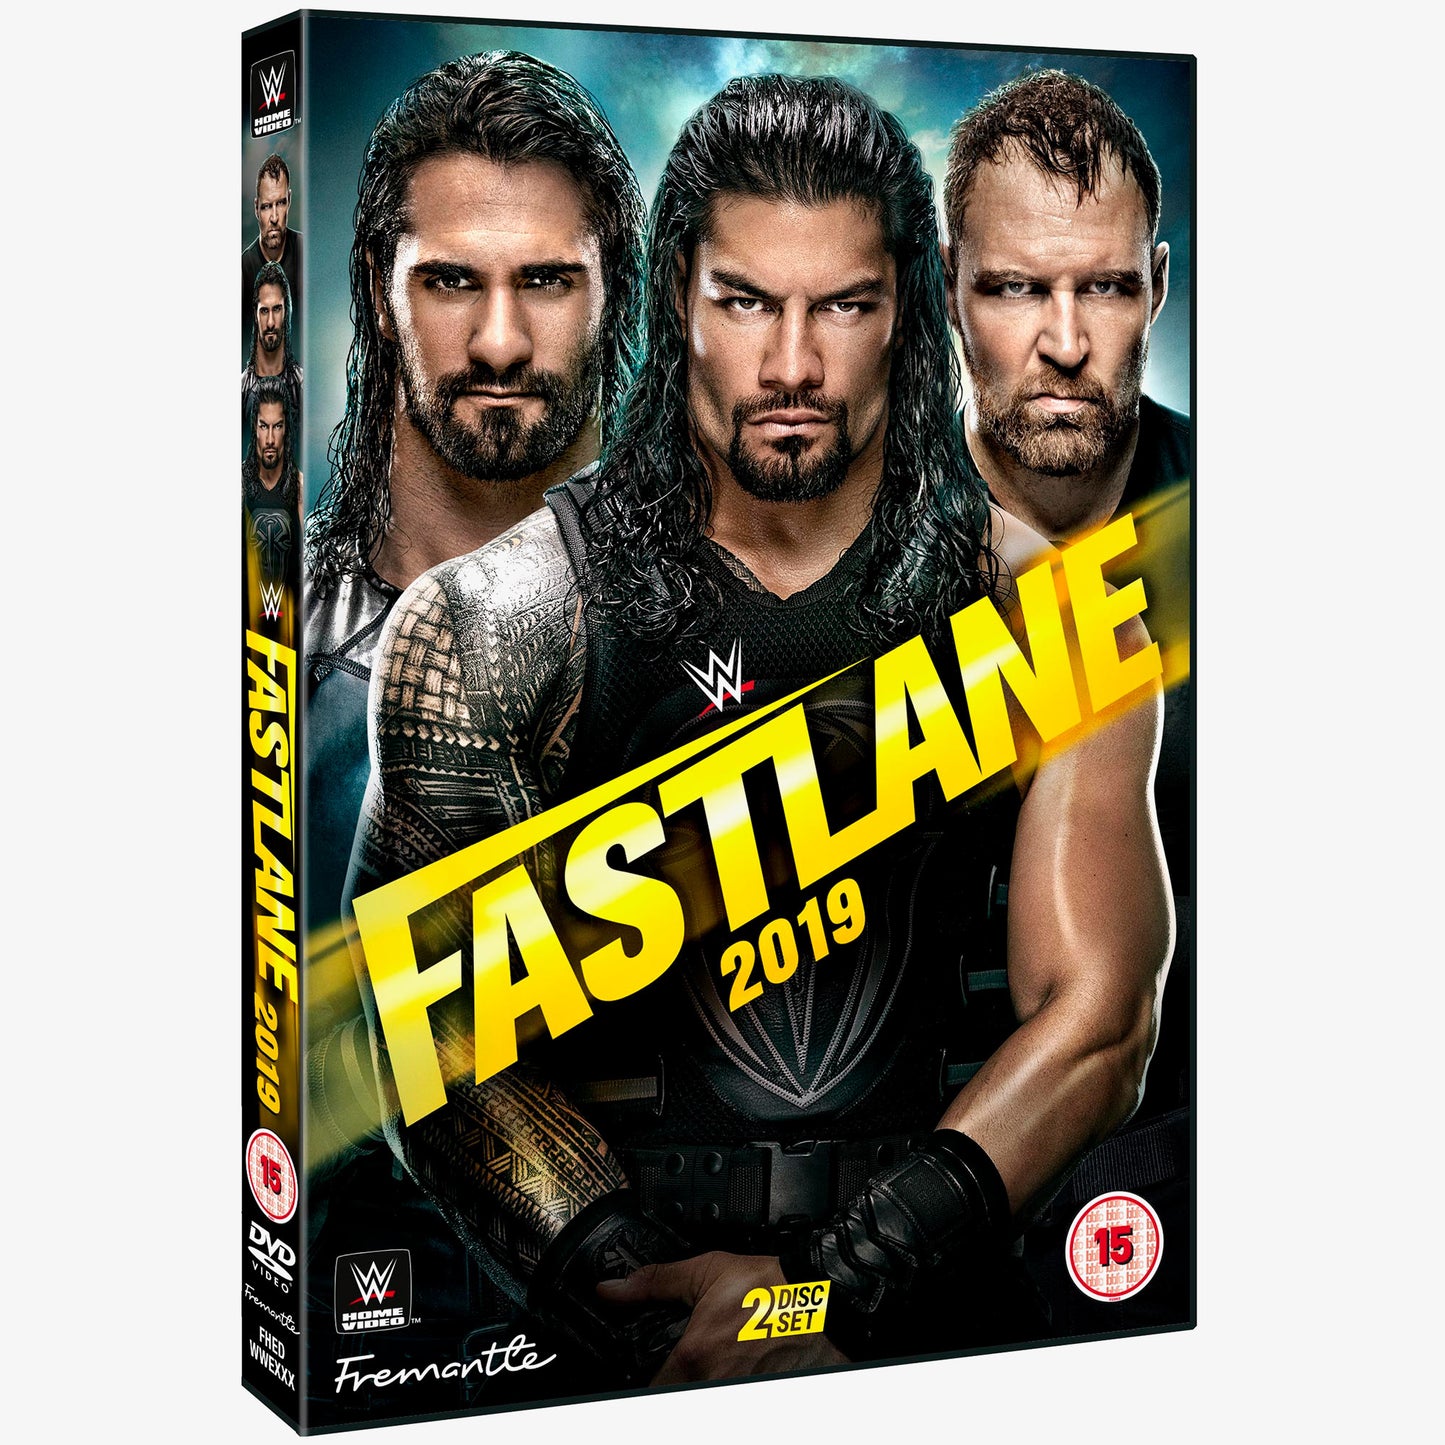 WWE Fast Lane 2019 DVD